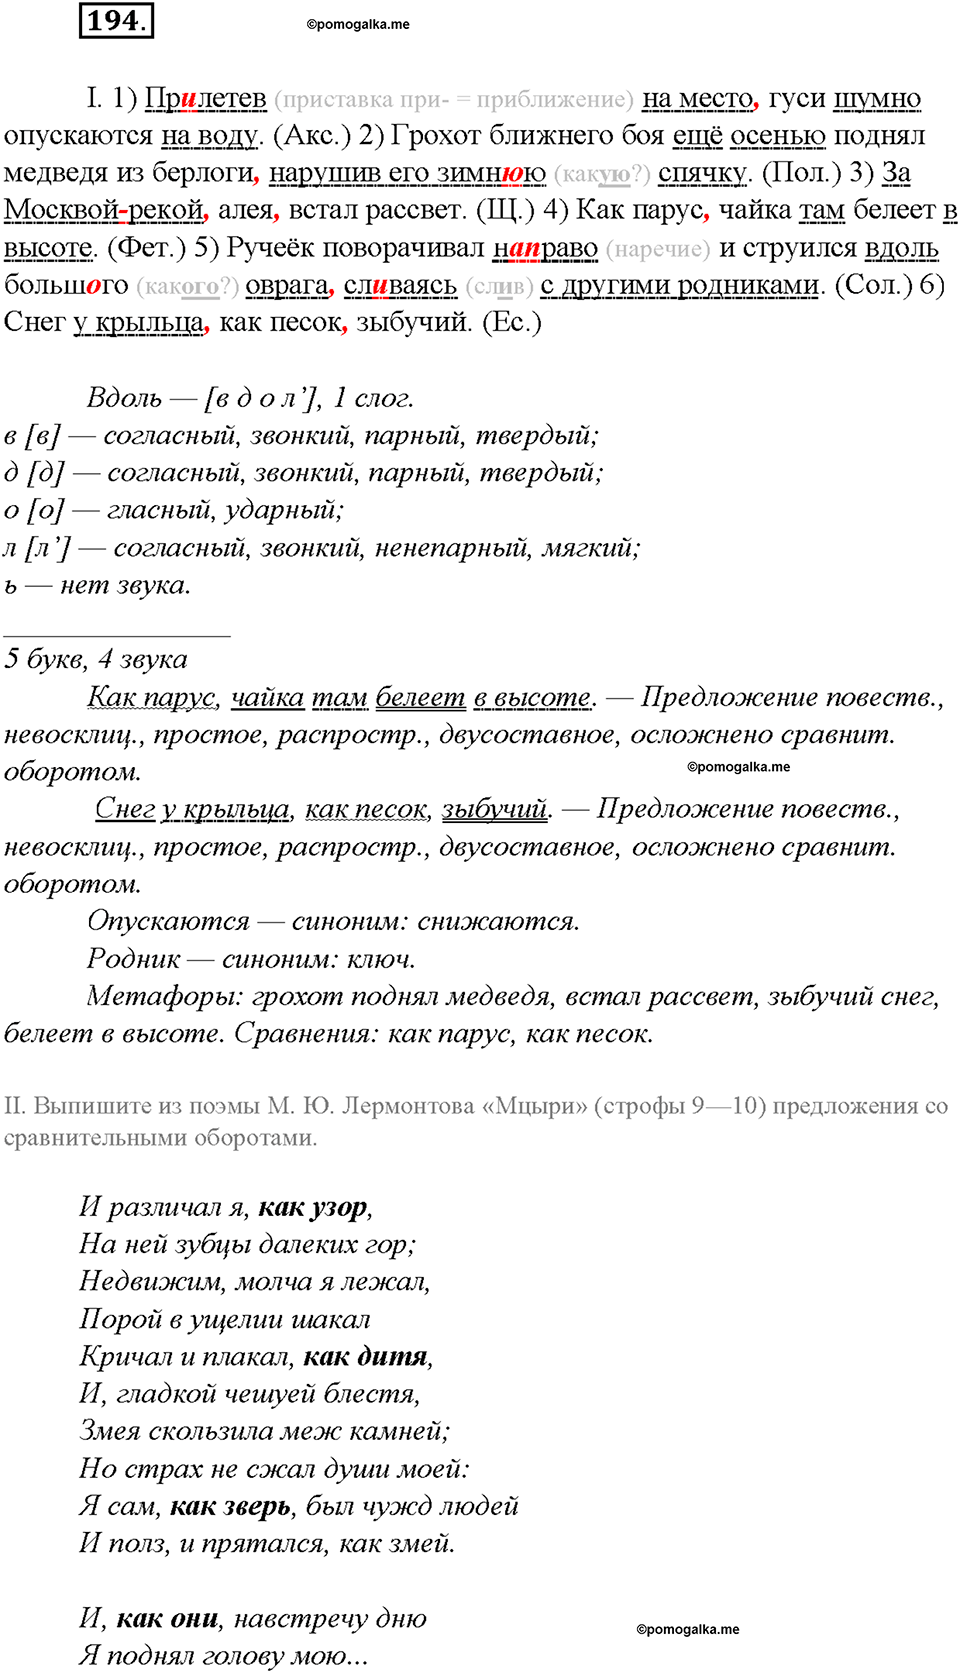 упражнение №194 русский язык 8 класс Бурхударов